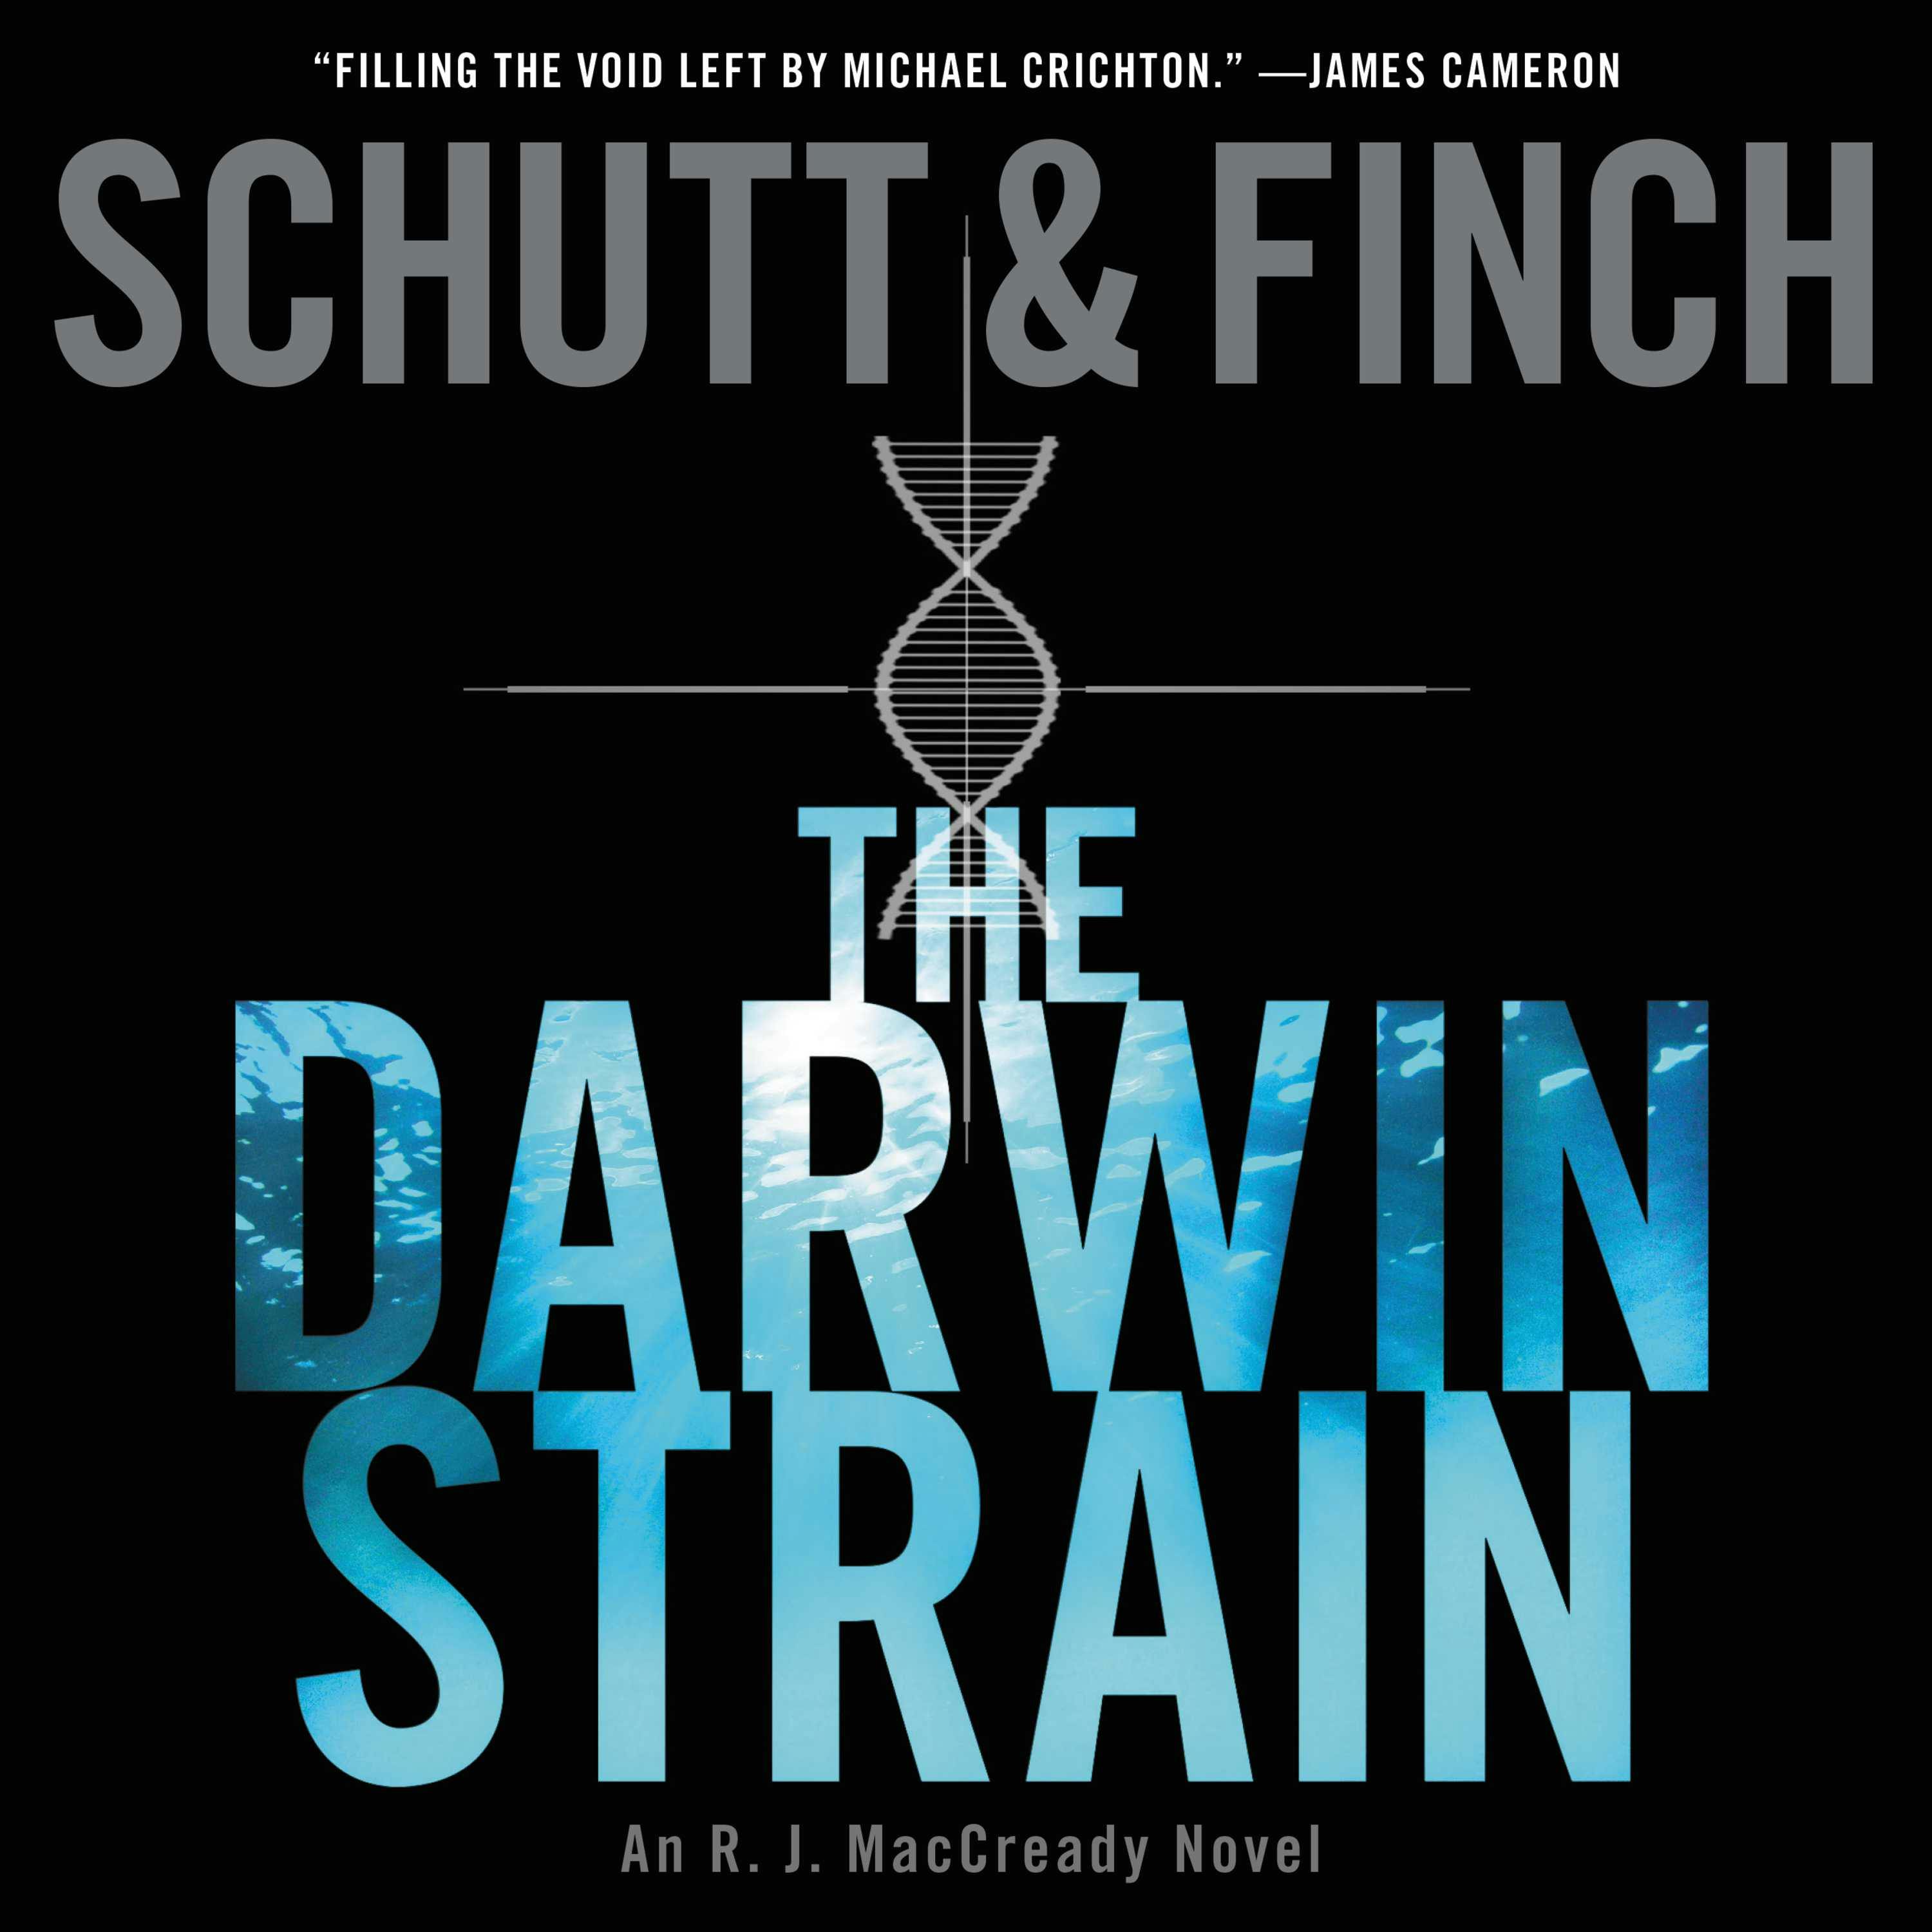 The Darwin Strain: An R. J. MacCready Novel - Bill Schutt, J. R. Finch